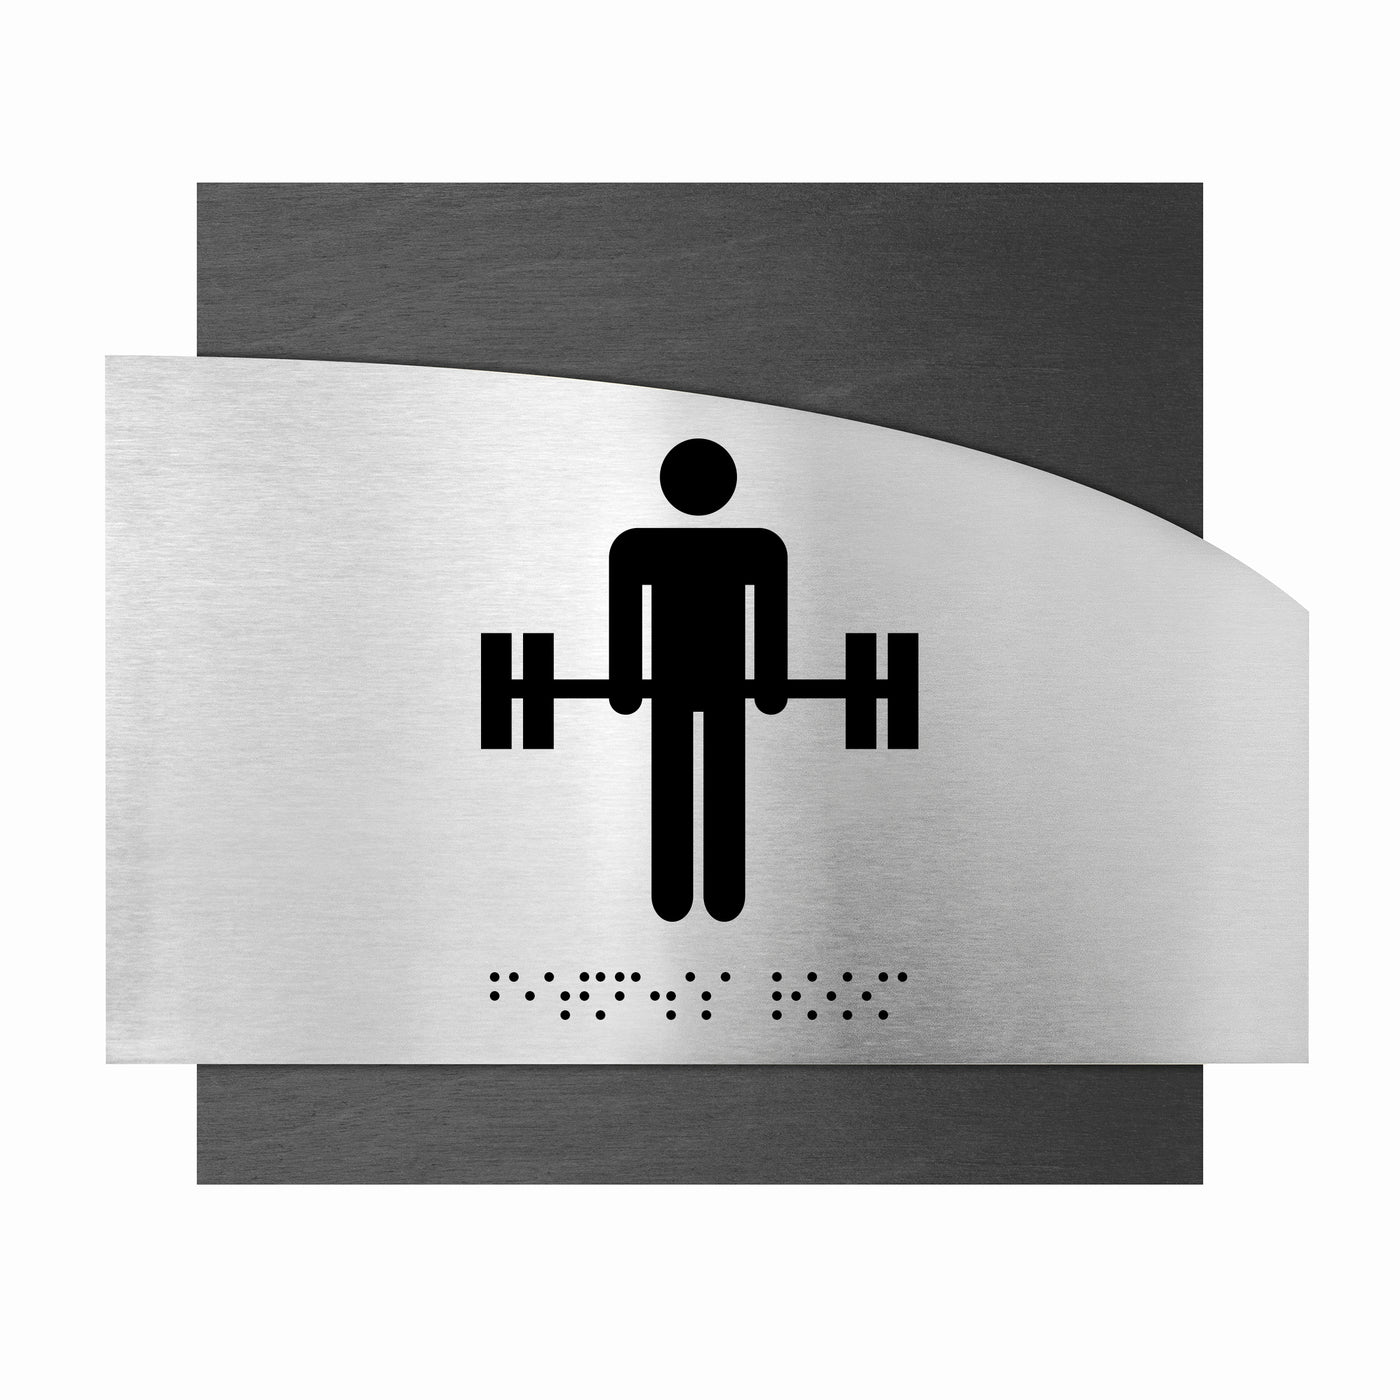 Information Signs - Fitness Room Steel & Wood Sign "Wave" Design